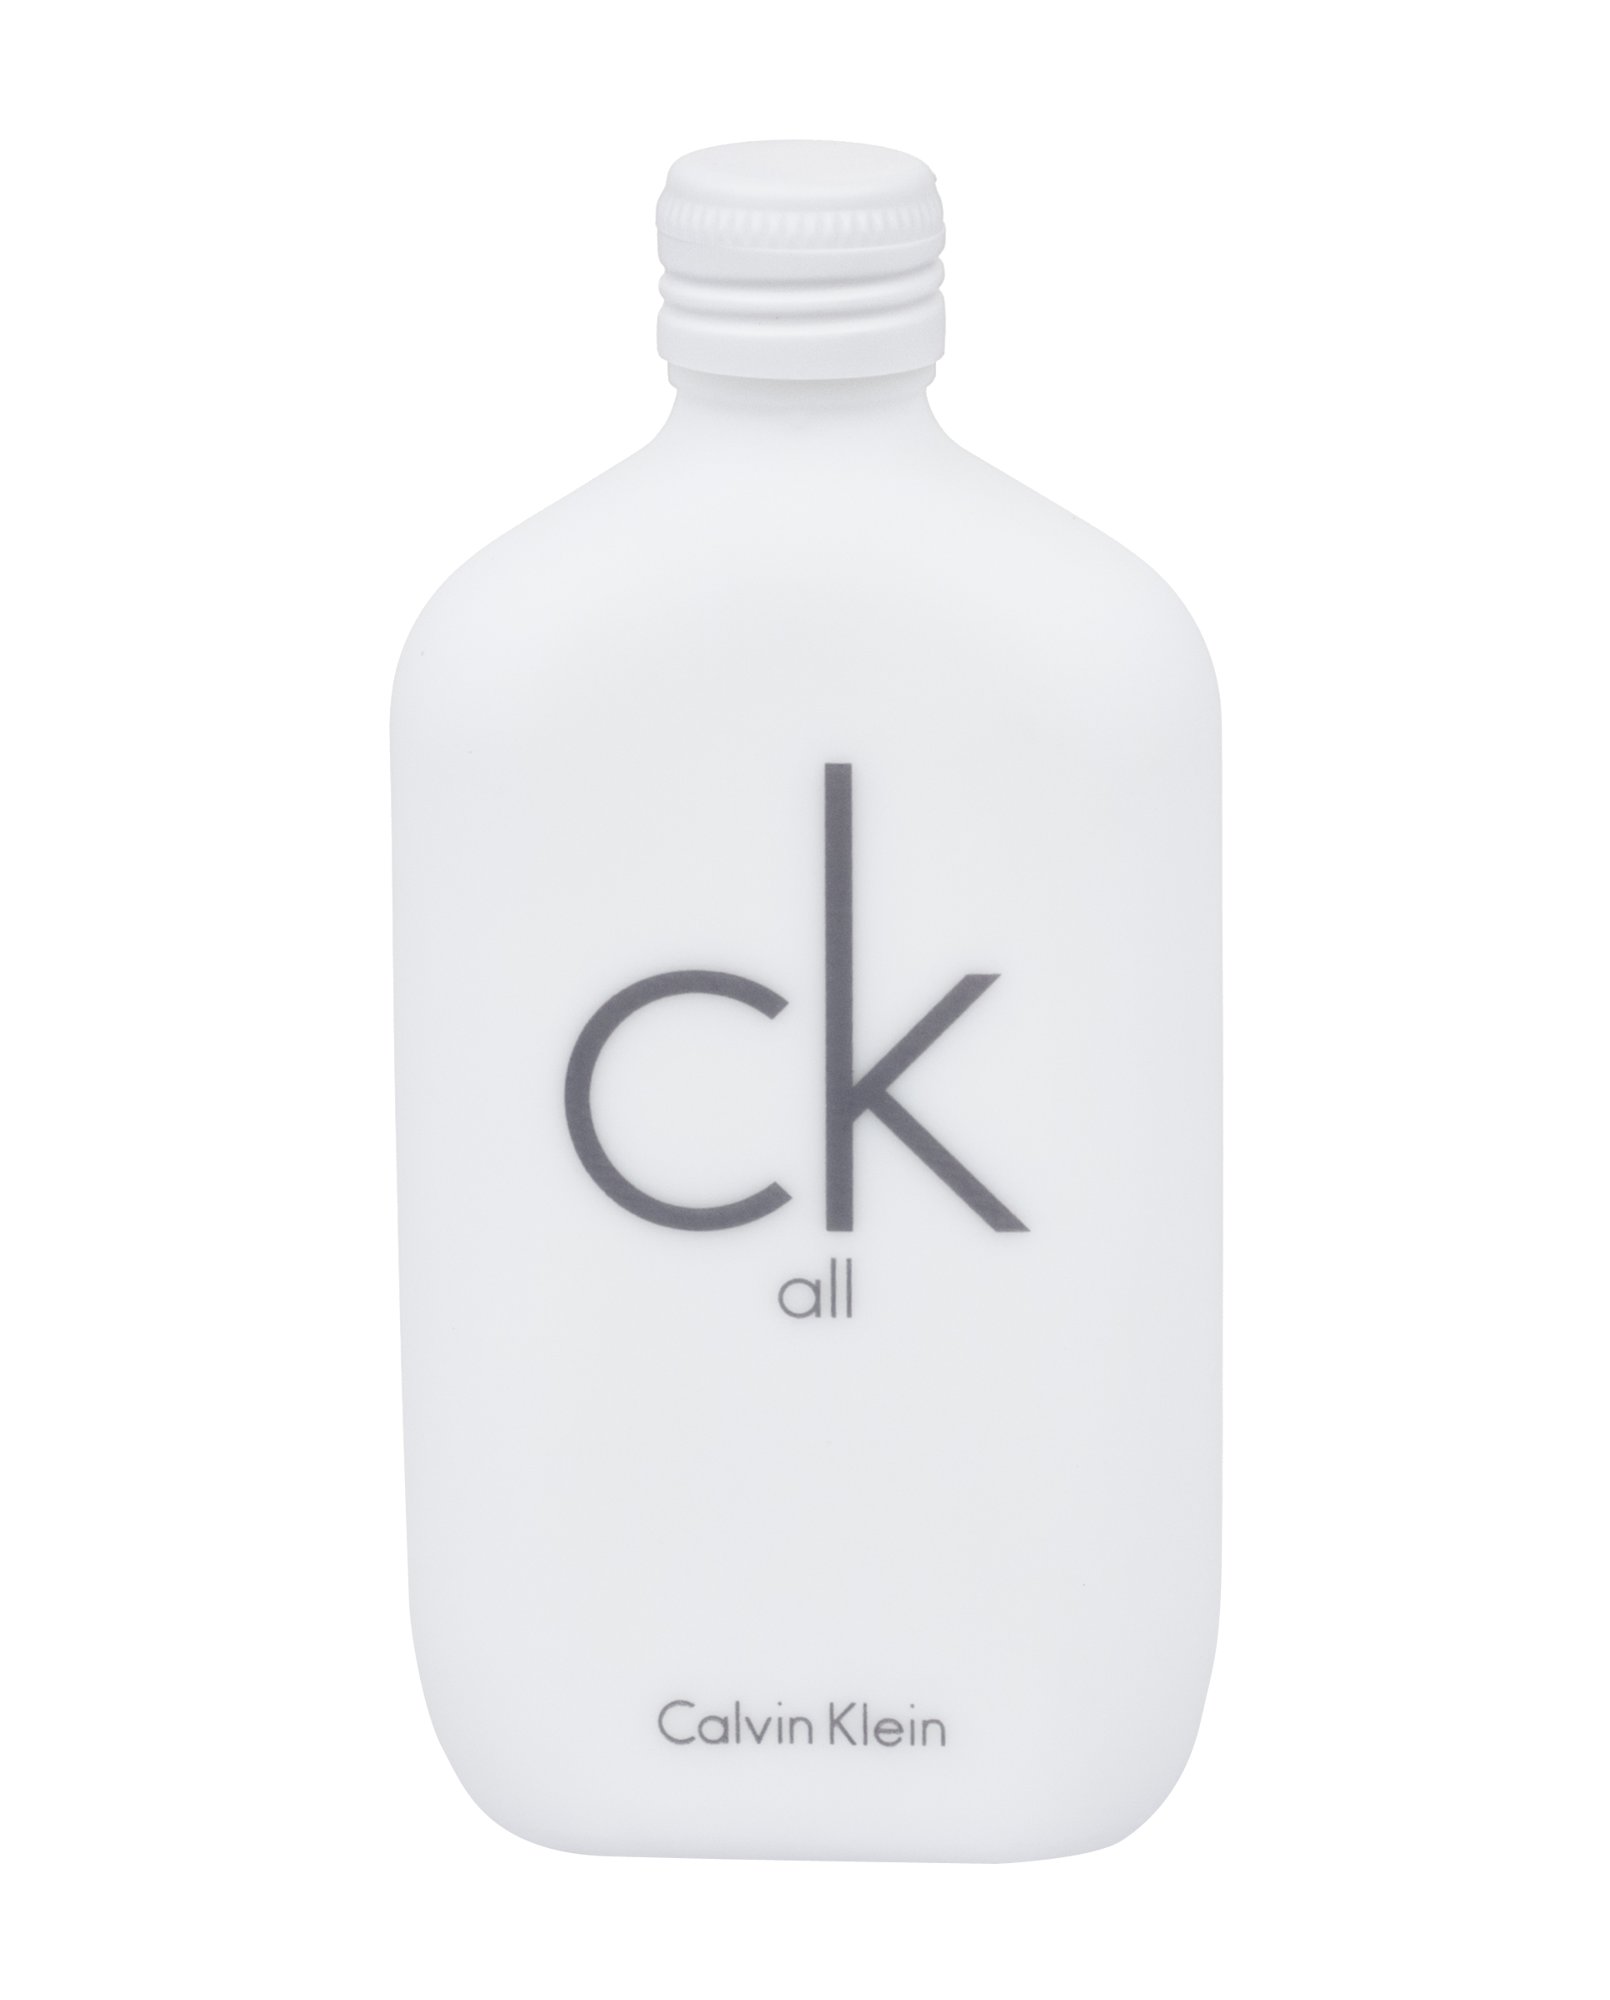 Calvin Klein CK All, edt 50ml